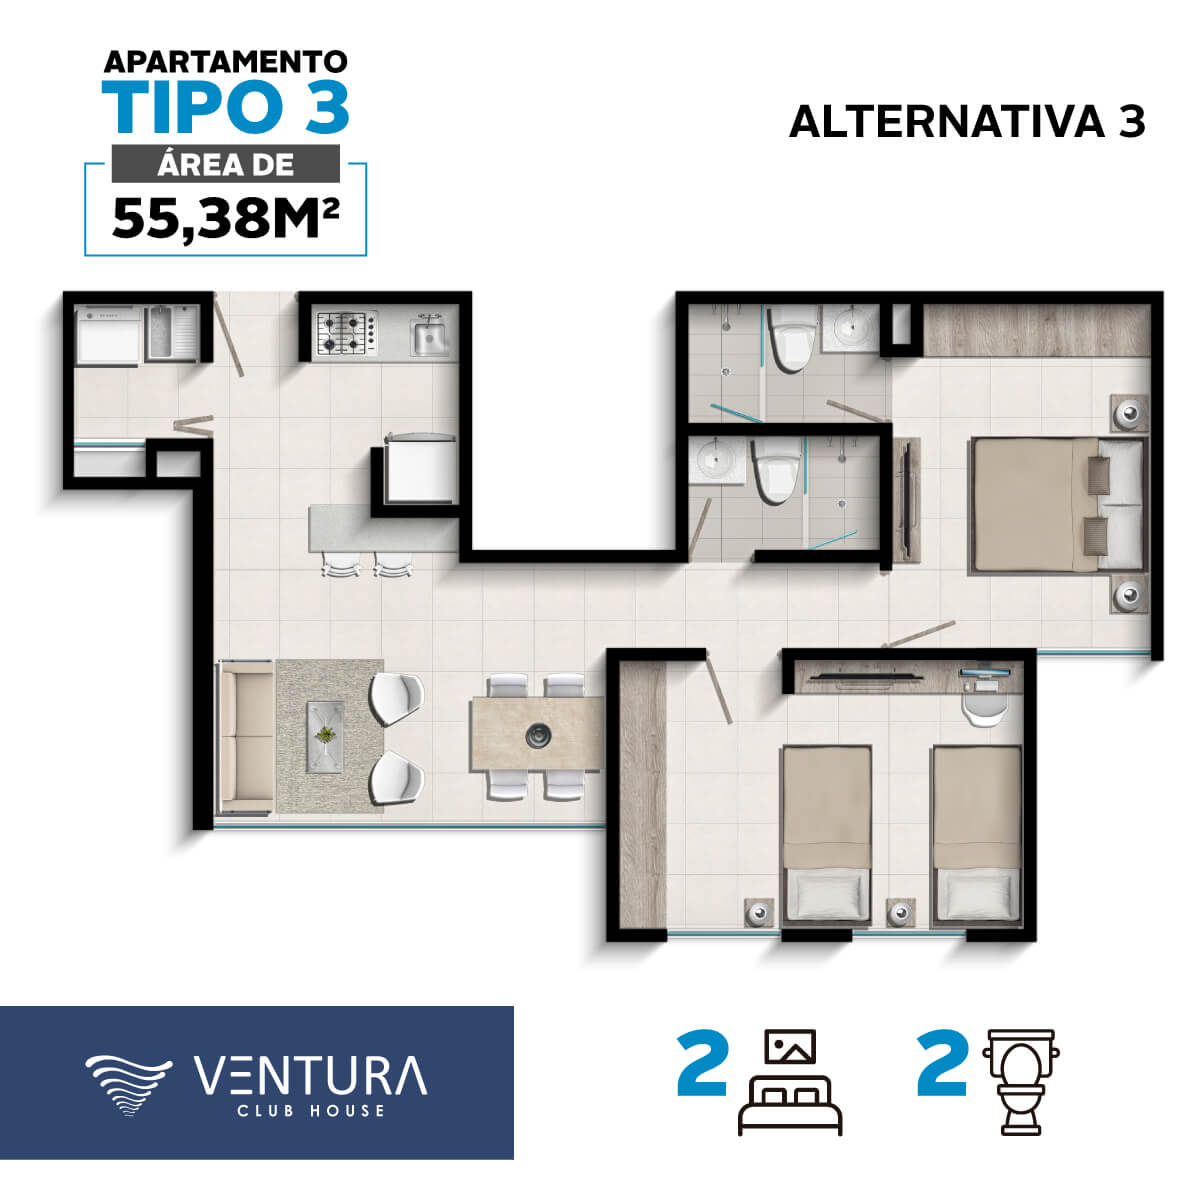 Tipos-Aptos-Ventura-apartamento-tipo3-alternativa3-cyu-colombia